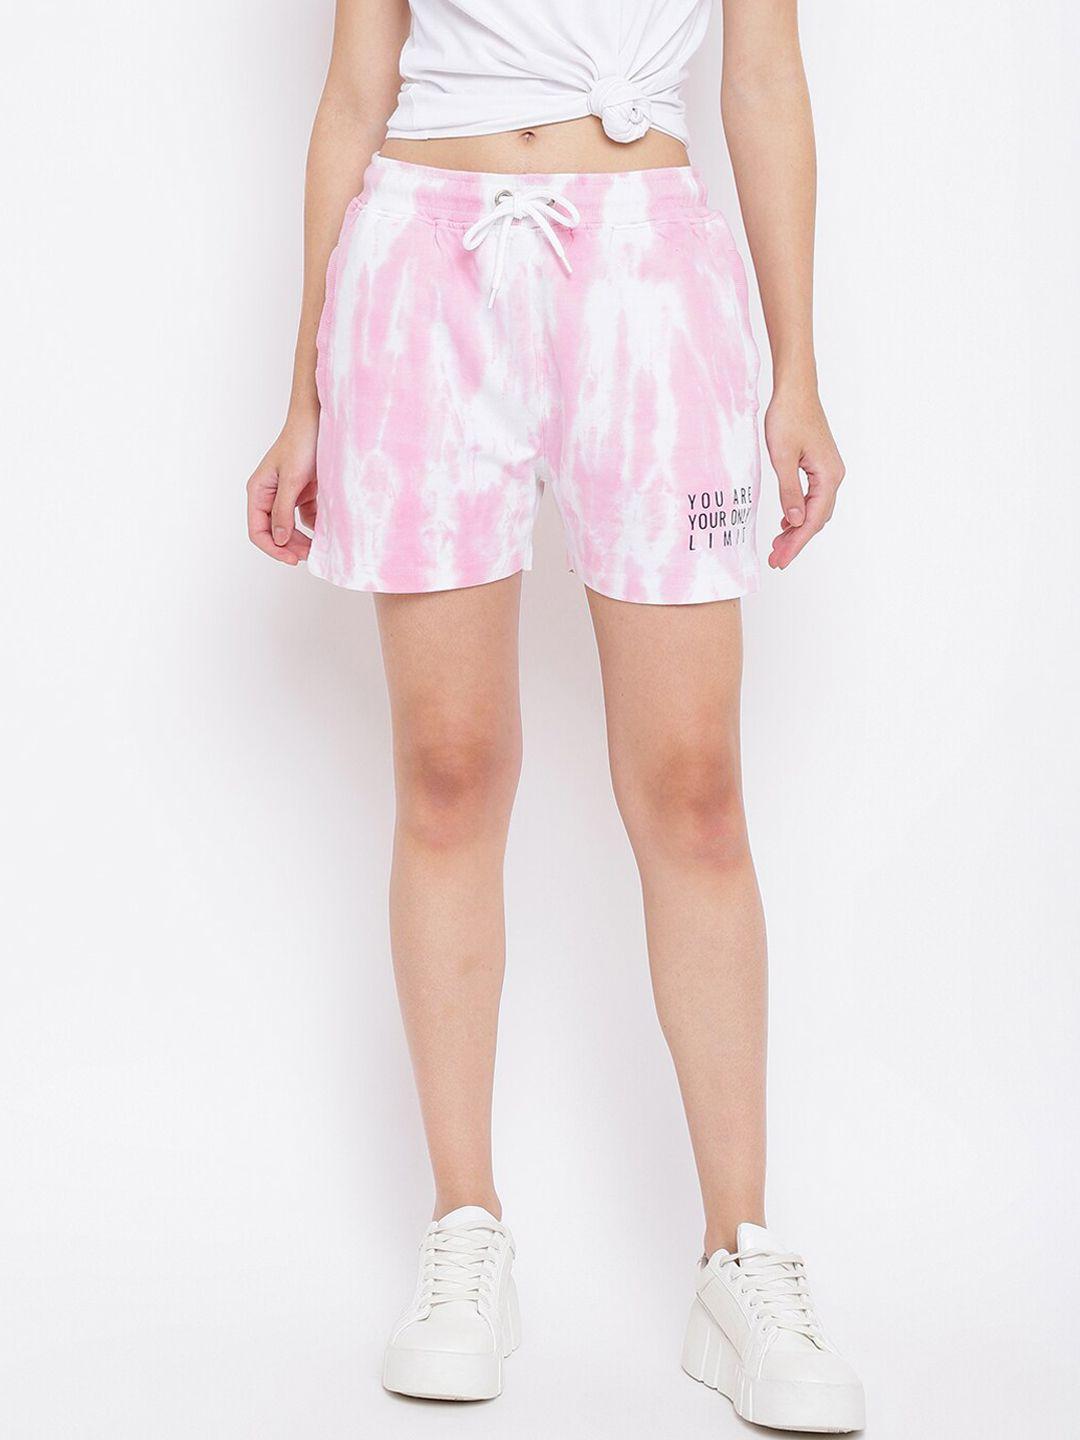 belliskey-women-pink-printed-high-rise-shorts